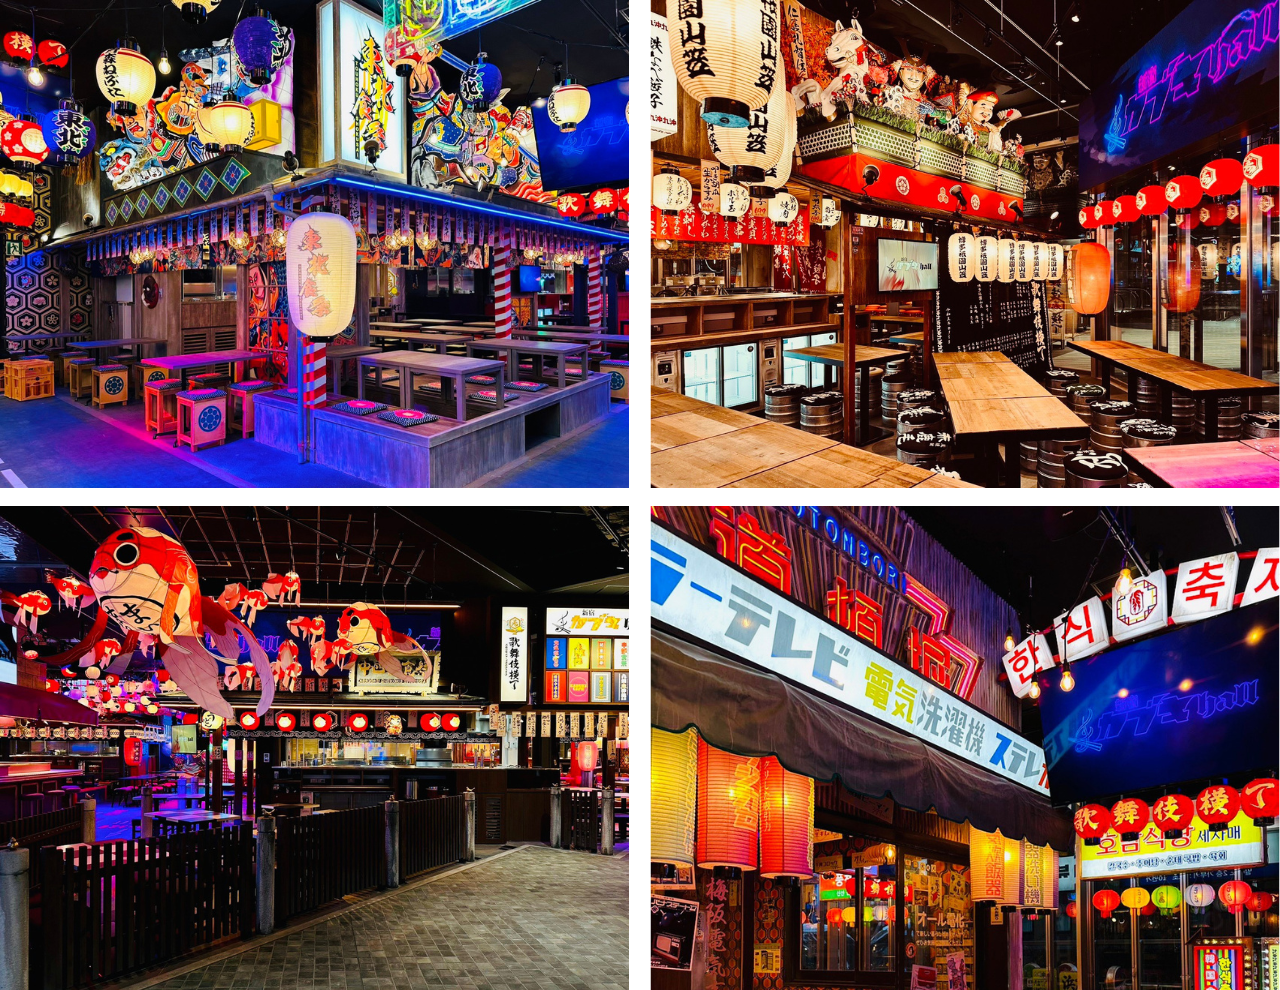 充满日式风情的“新宿歌舞伎馆—歌舞伎町横丁”。在舞台上还会举办日本大鼓、花魁游行、武打乱斗等传统表演和人气动漫联动活动（图片：滨仓的商店制作所）